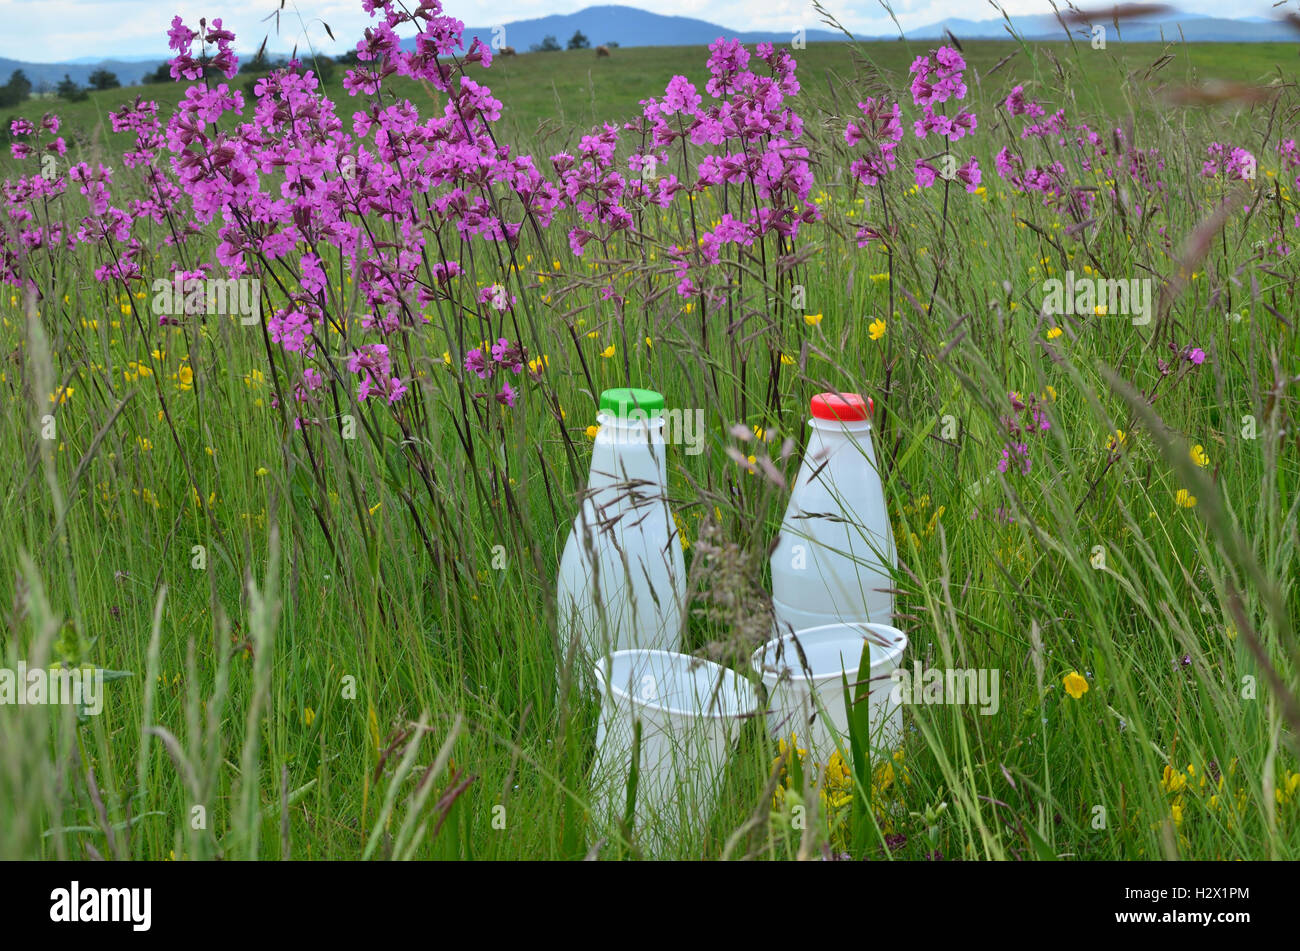 Deux bouteilles de lait blanc en plastique et des tasses pour les produits laitiers entouré de fleurs sauvages roses dans un pré Banque D'Images